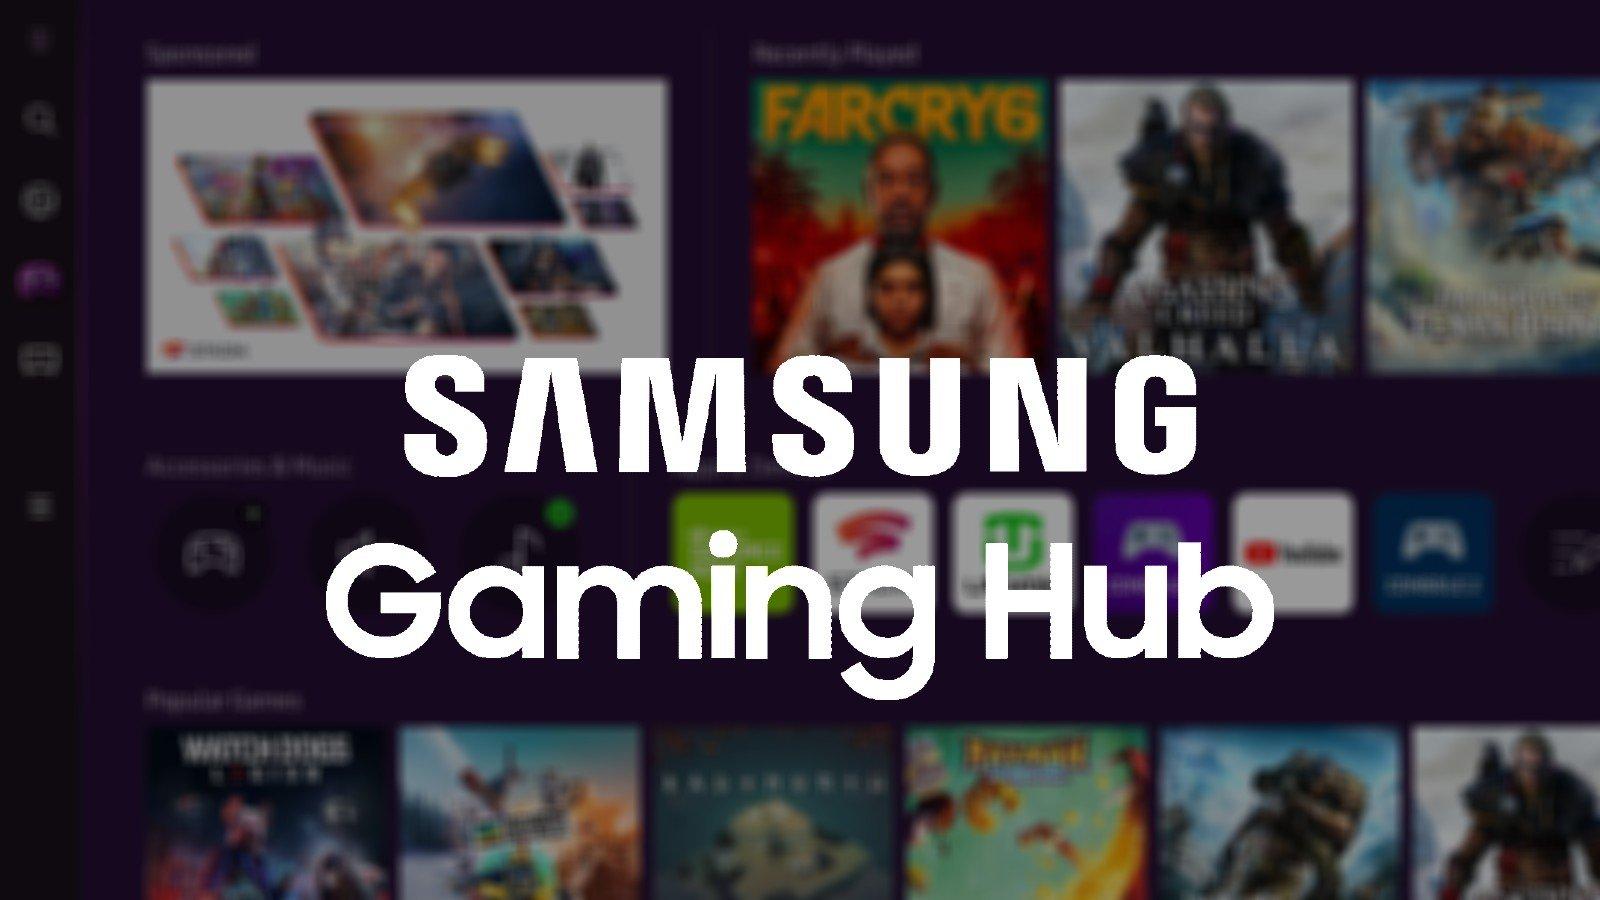 Samsung sẽ ra mắt Gaming Hub mới để chơi game trên smart TV (Ảnh: Internet).